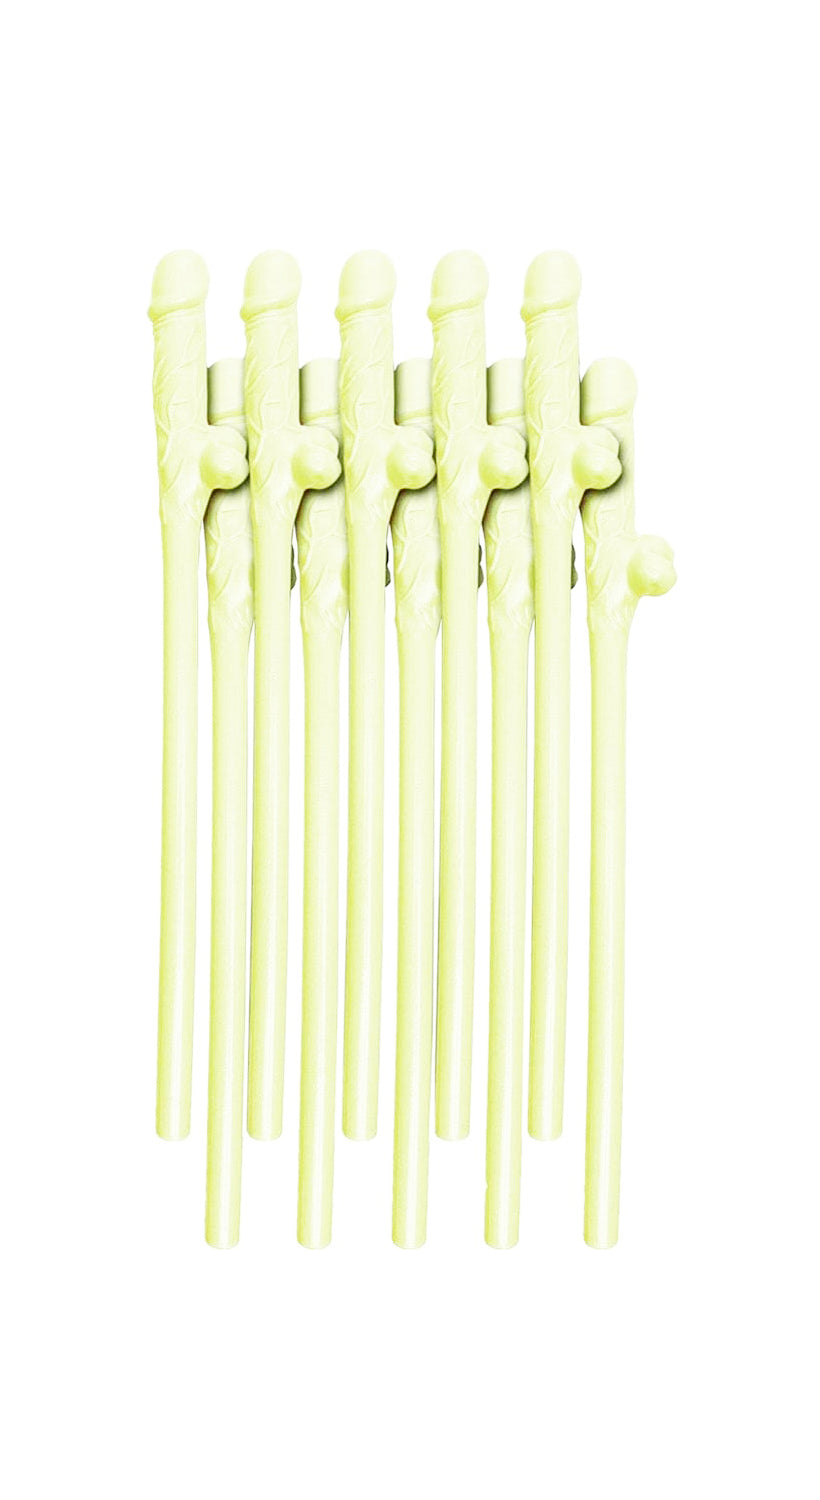 Glow Straws